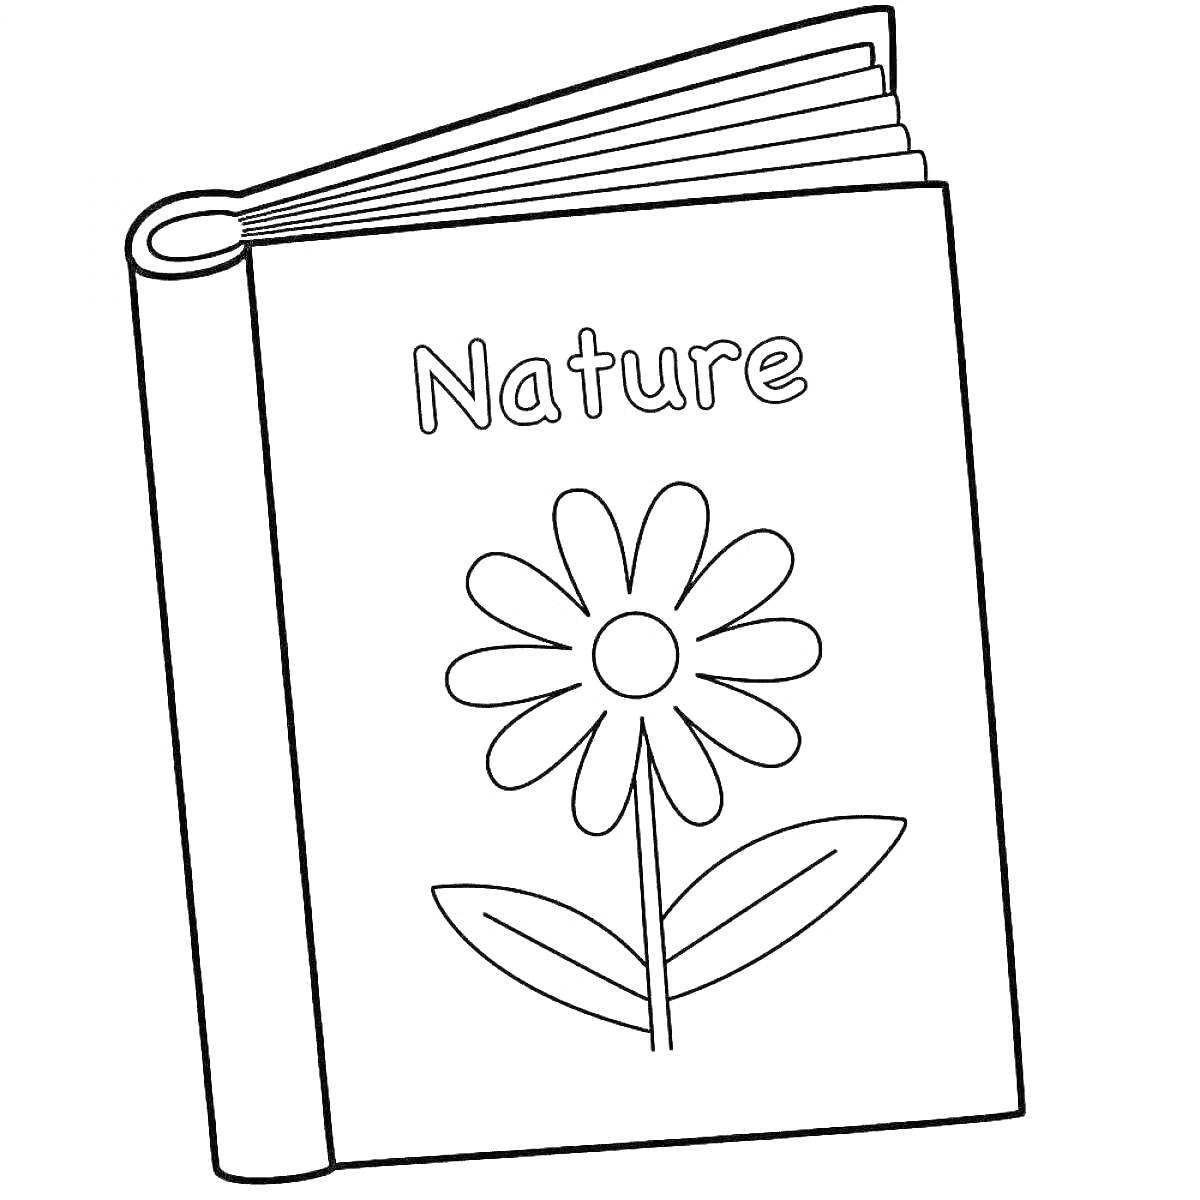 На раскраске изображено: Учебник, Природа, Книга, Ботаника, Растения, Обучение, Цветы